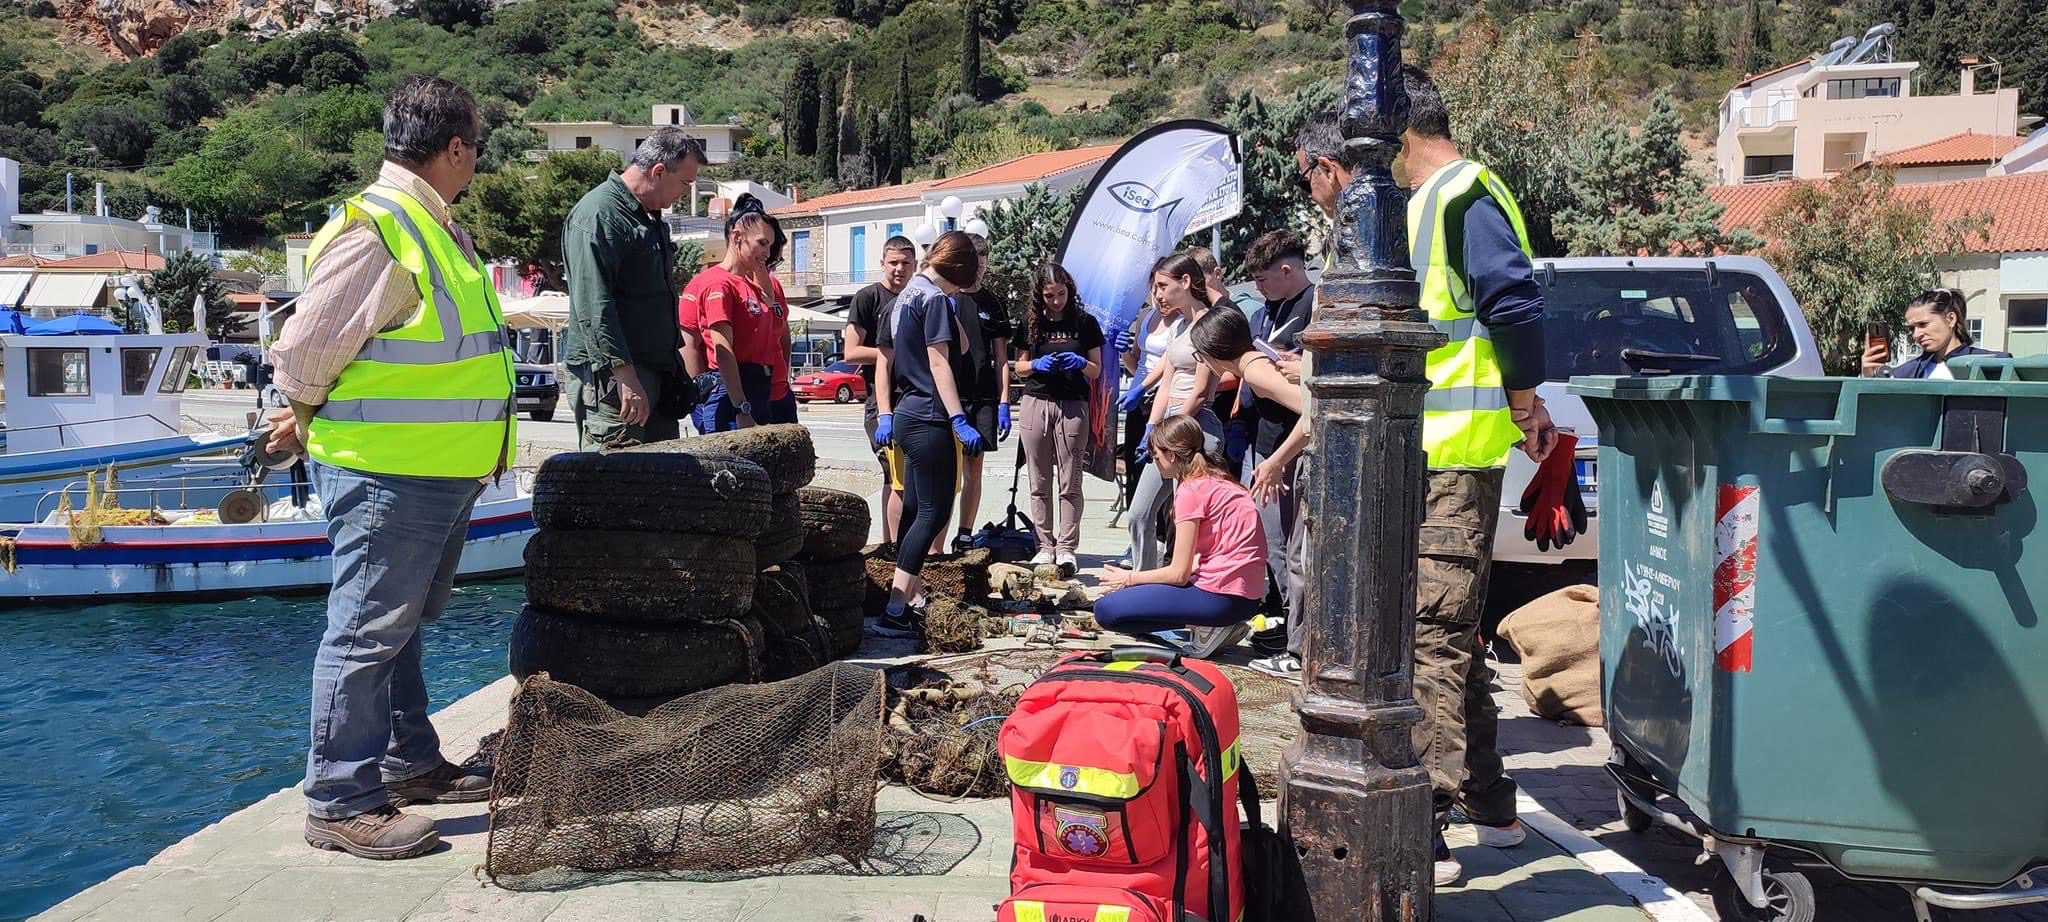 Καθάρισαν παραλίες και βυθό λιμανιού στην Εύβοια – Δείτε τι βρήκαν μαθητές και εθελοντές (εικόνες)